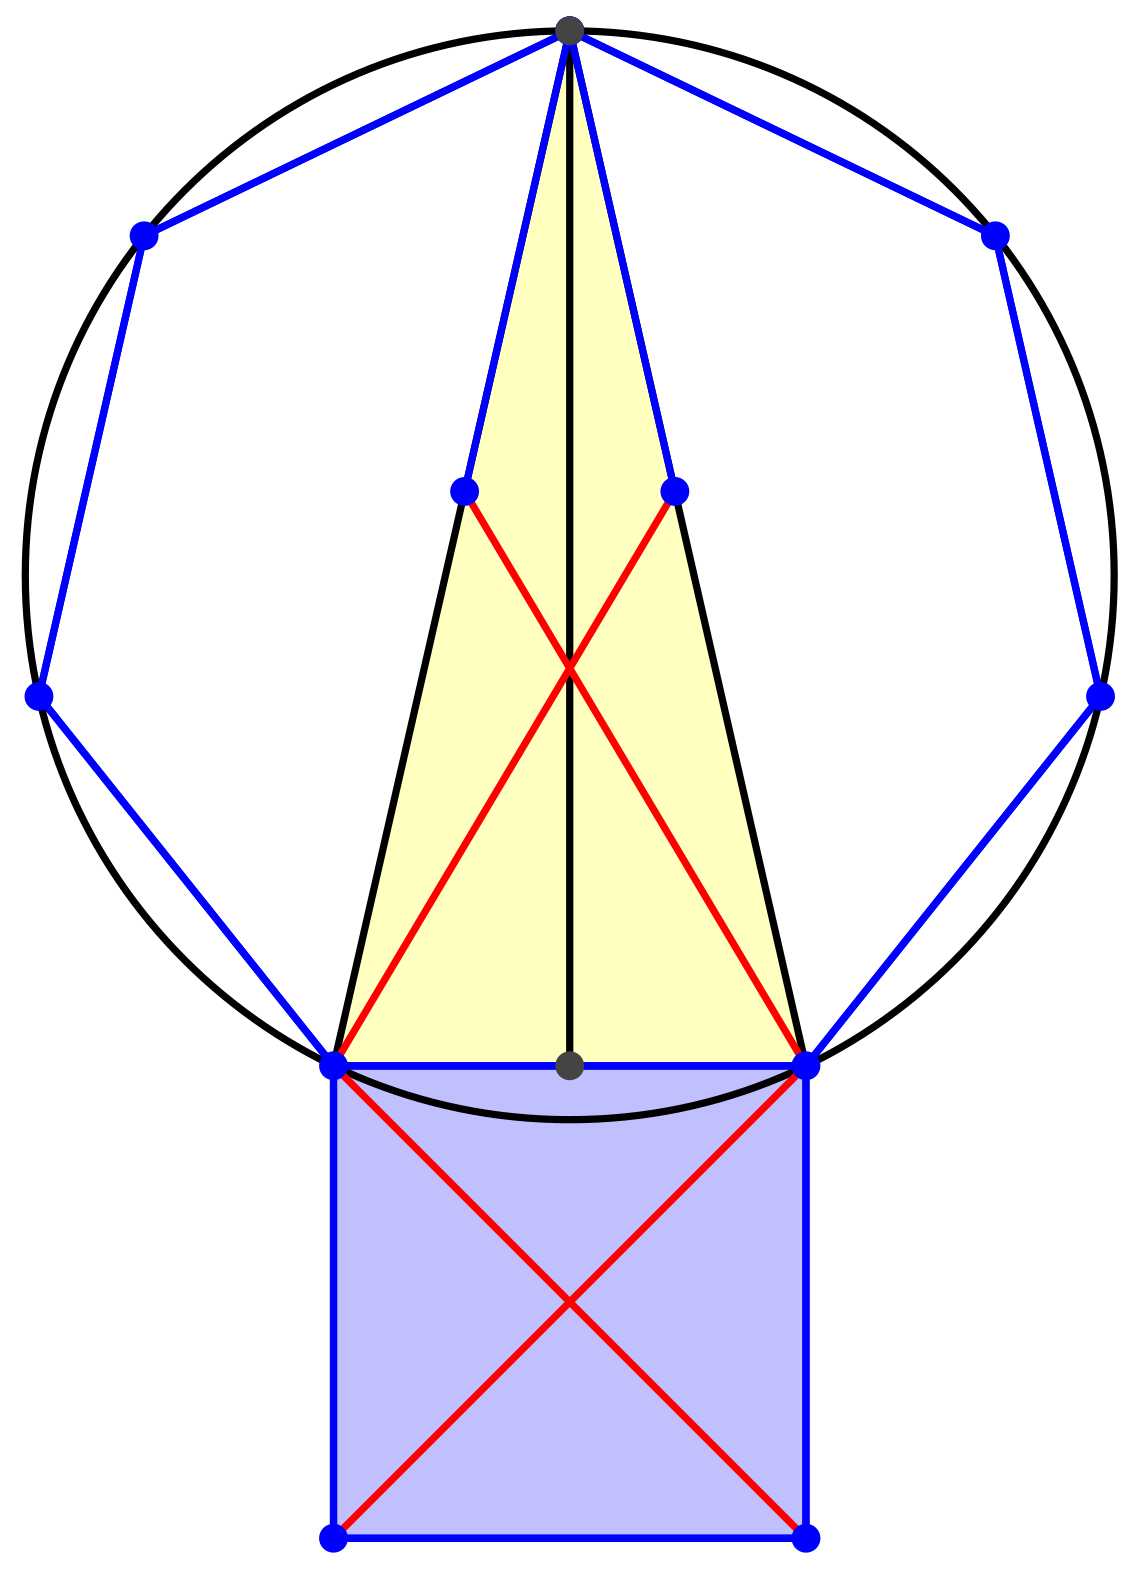 Ein Bild, das Reihe, Dreieck, Symmetrie, Design enthält.

Automatisch generierte Beschreibung